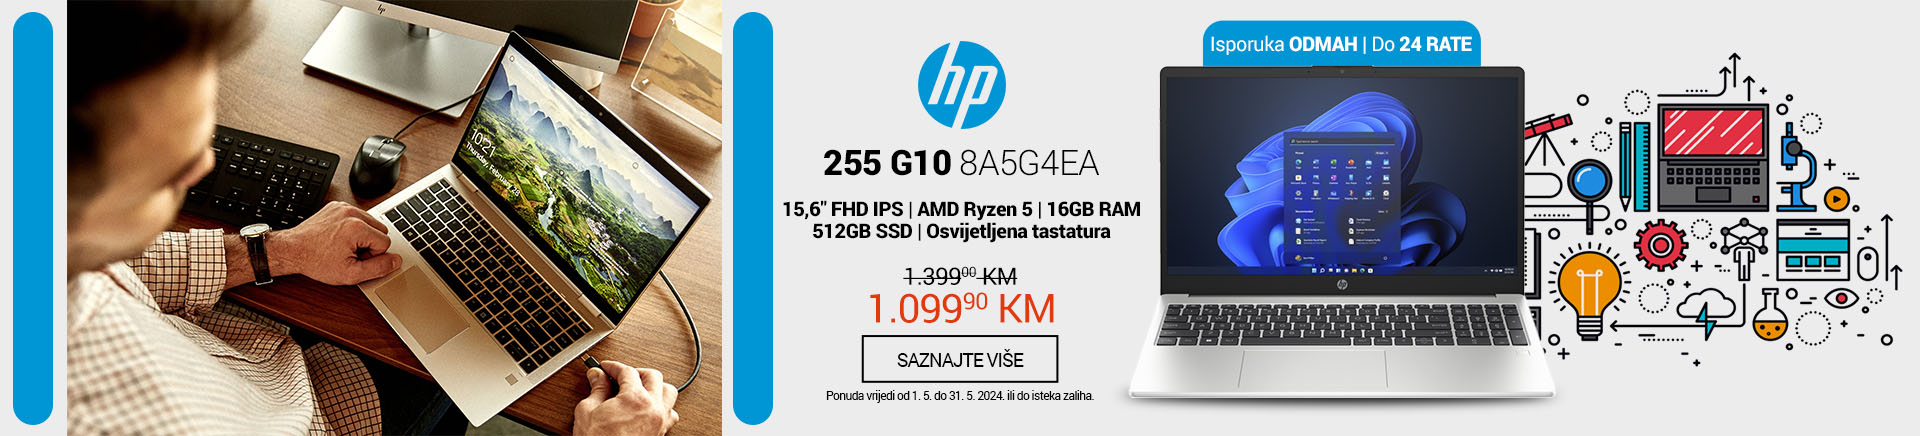 BA HP 255 G10 8A5G4EA Laptop MOBILE 380 X 436.jpg